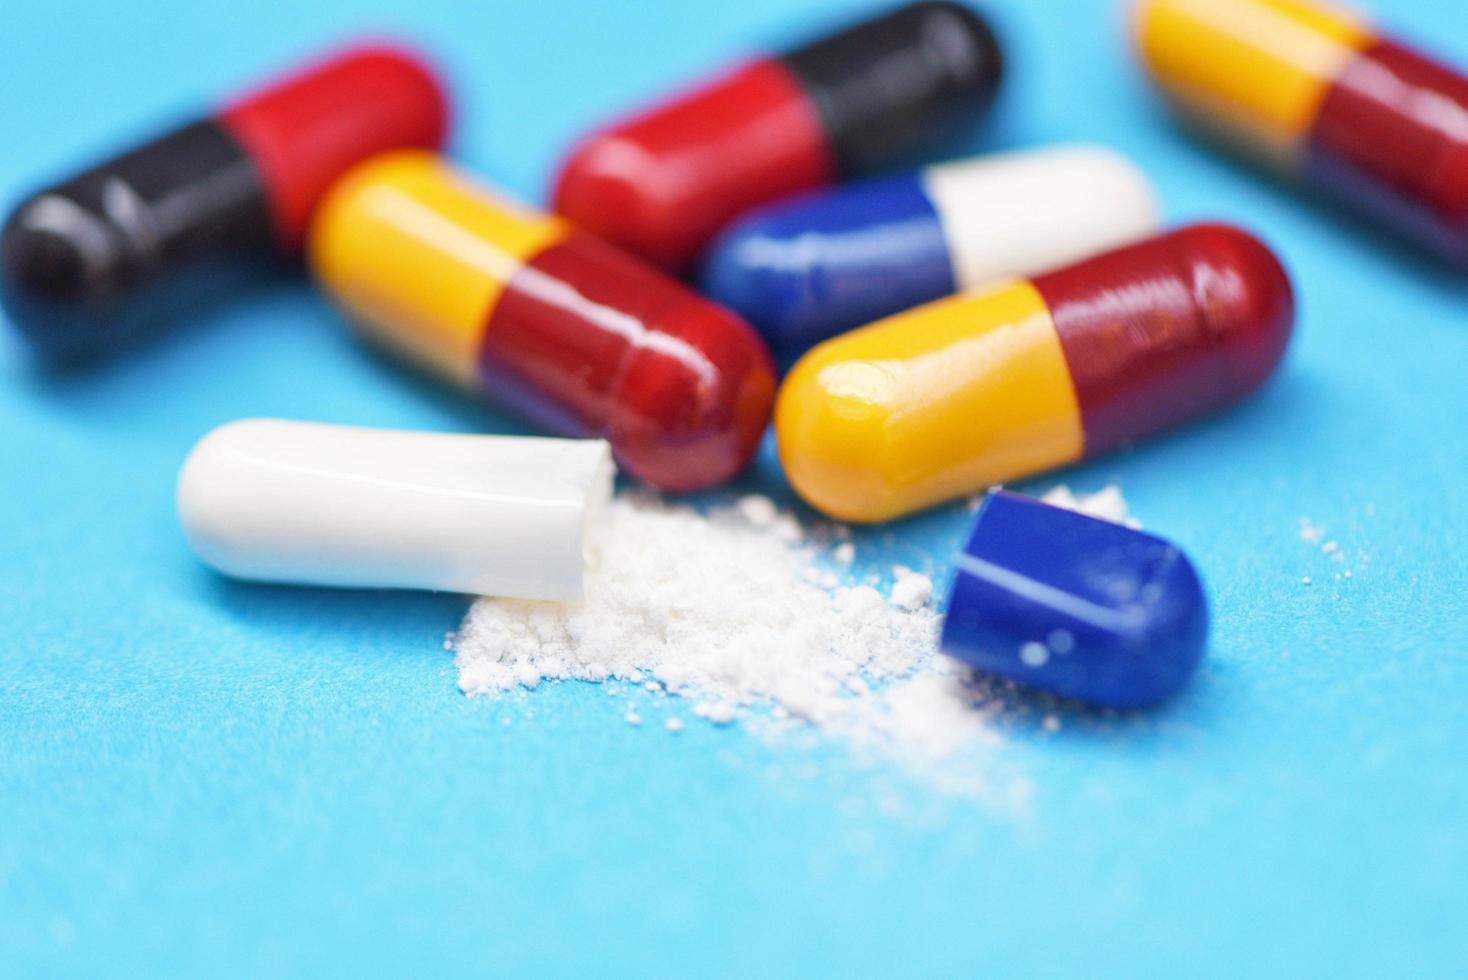 píldora de la cápsula: muchas píldoras de medicina farmacéutica variadas y coloridas concepto de medicamentos en cápsula foto